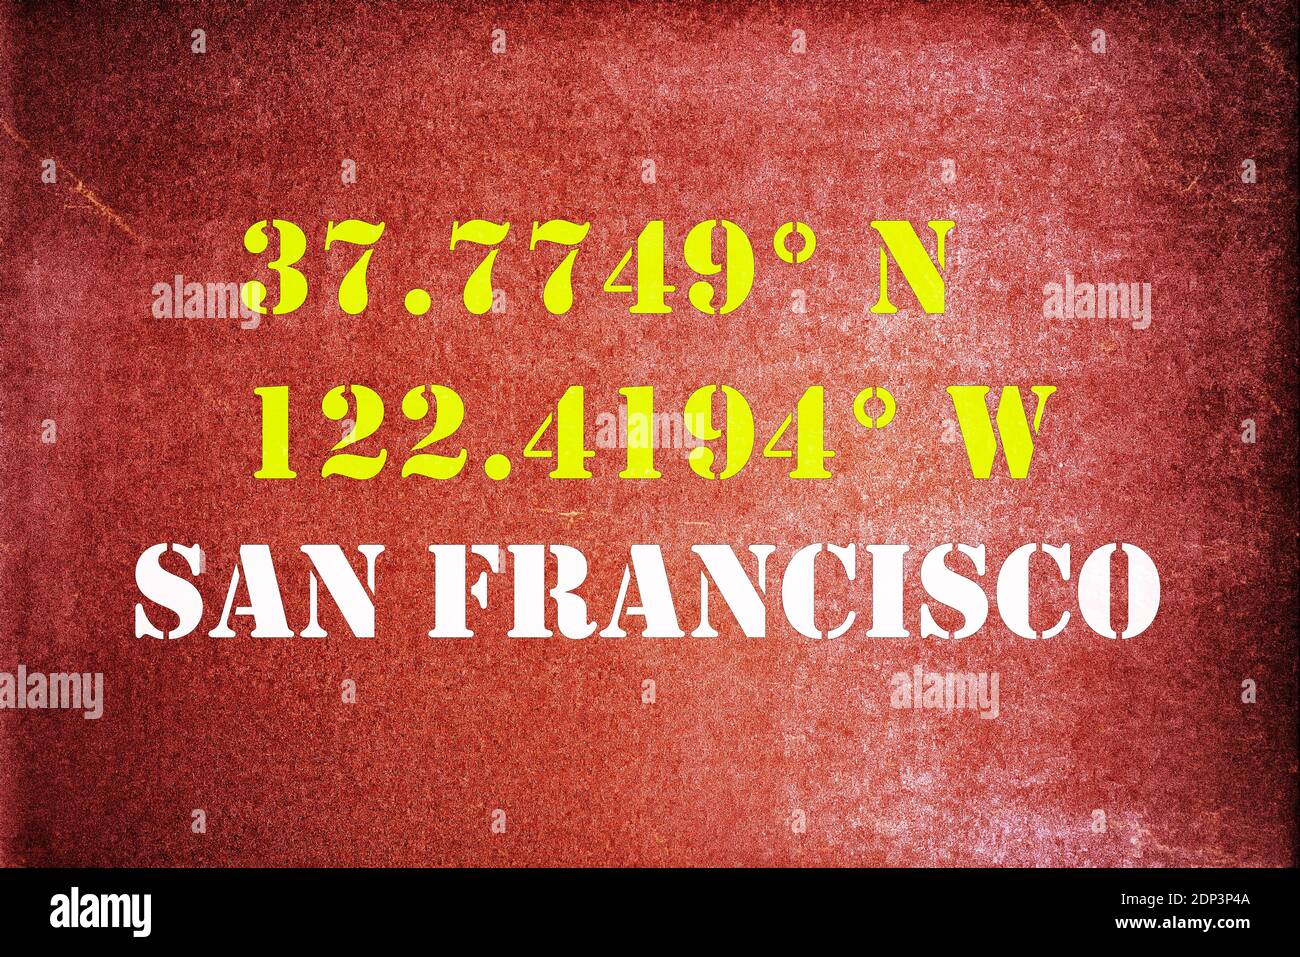 GPS-Koordinaten für San Francisco California mit einem  Vintage/Retro-Typografie-Effekt Stockfotografie - Alamy